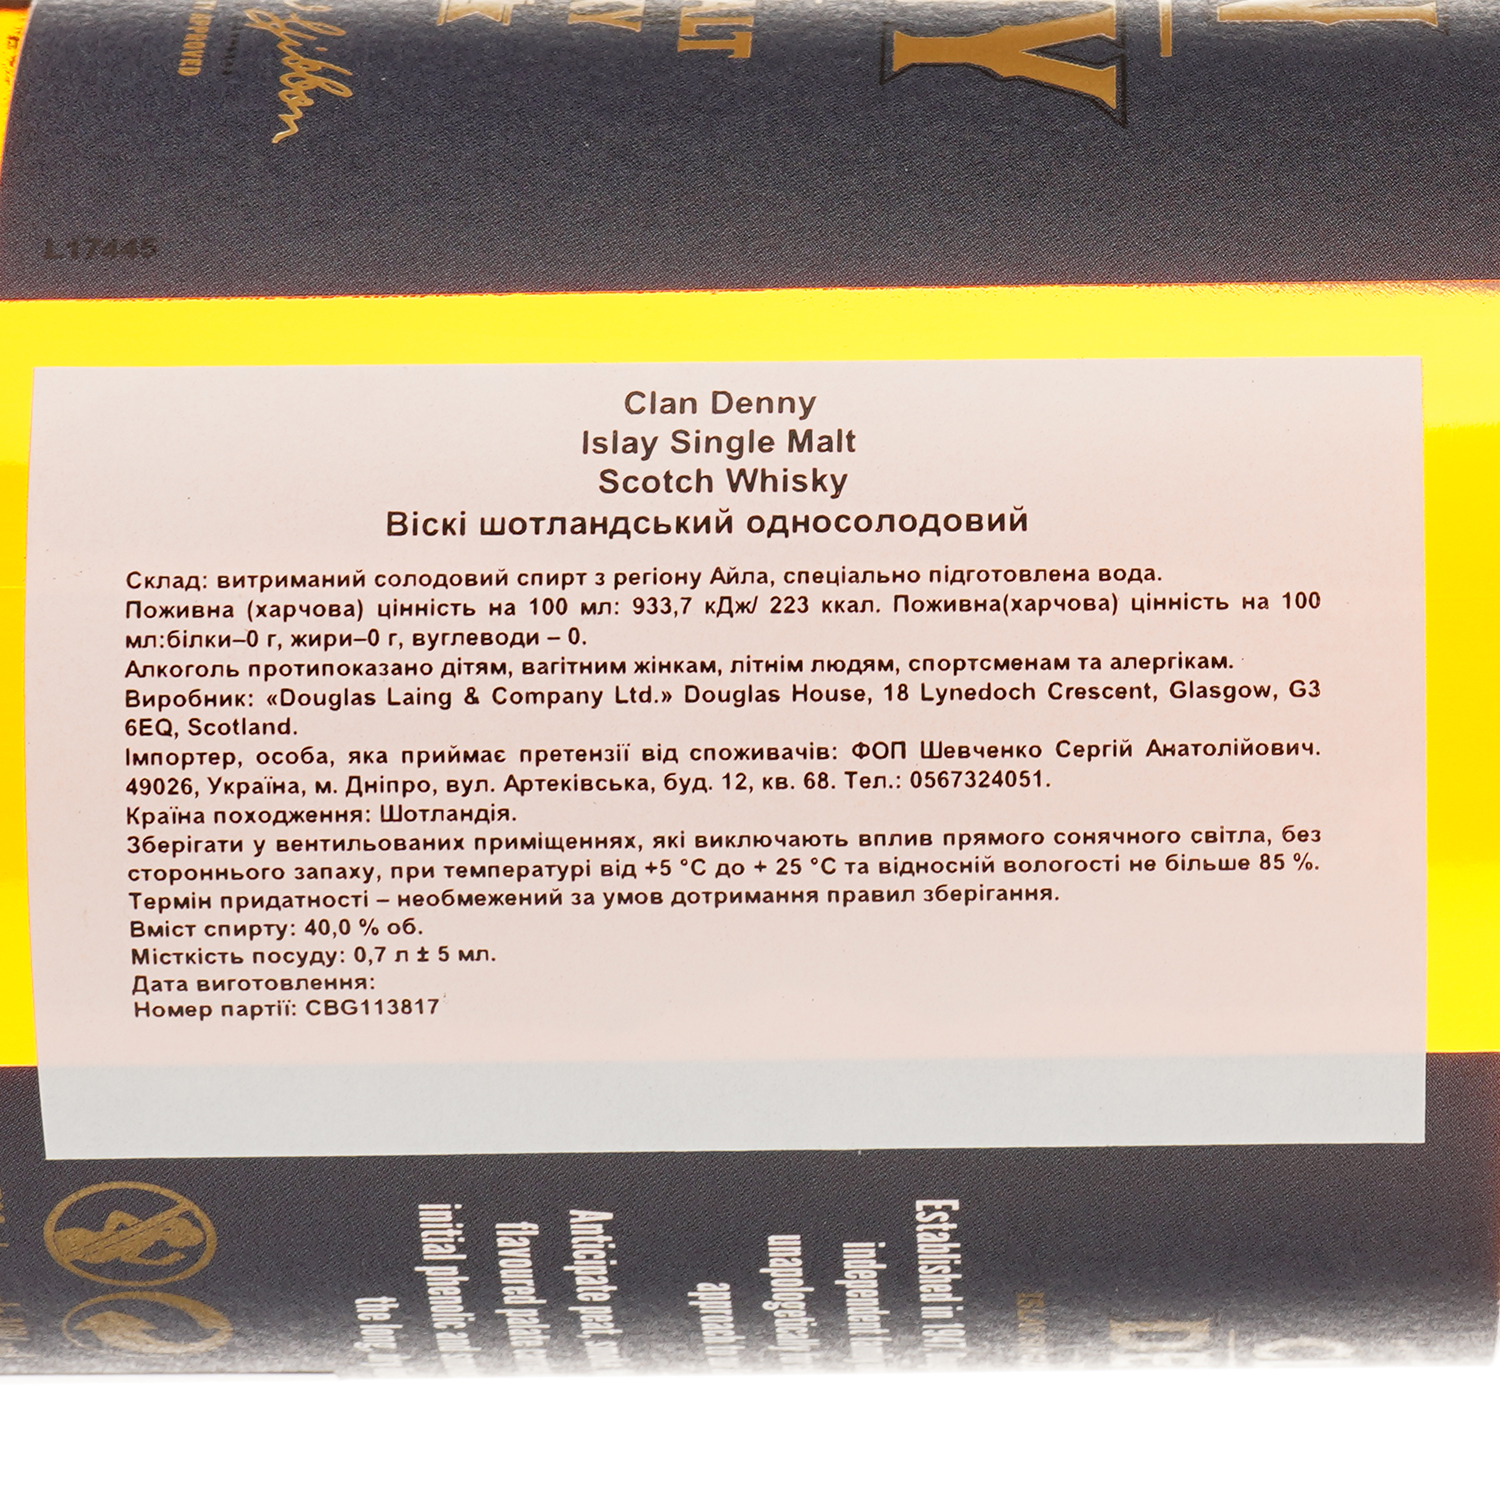 Виски Clan Denny Islay Single Malt 40% 0.7 л, в коробке - фото 3